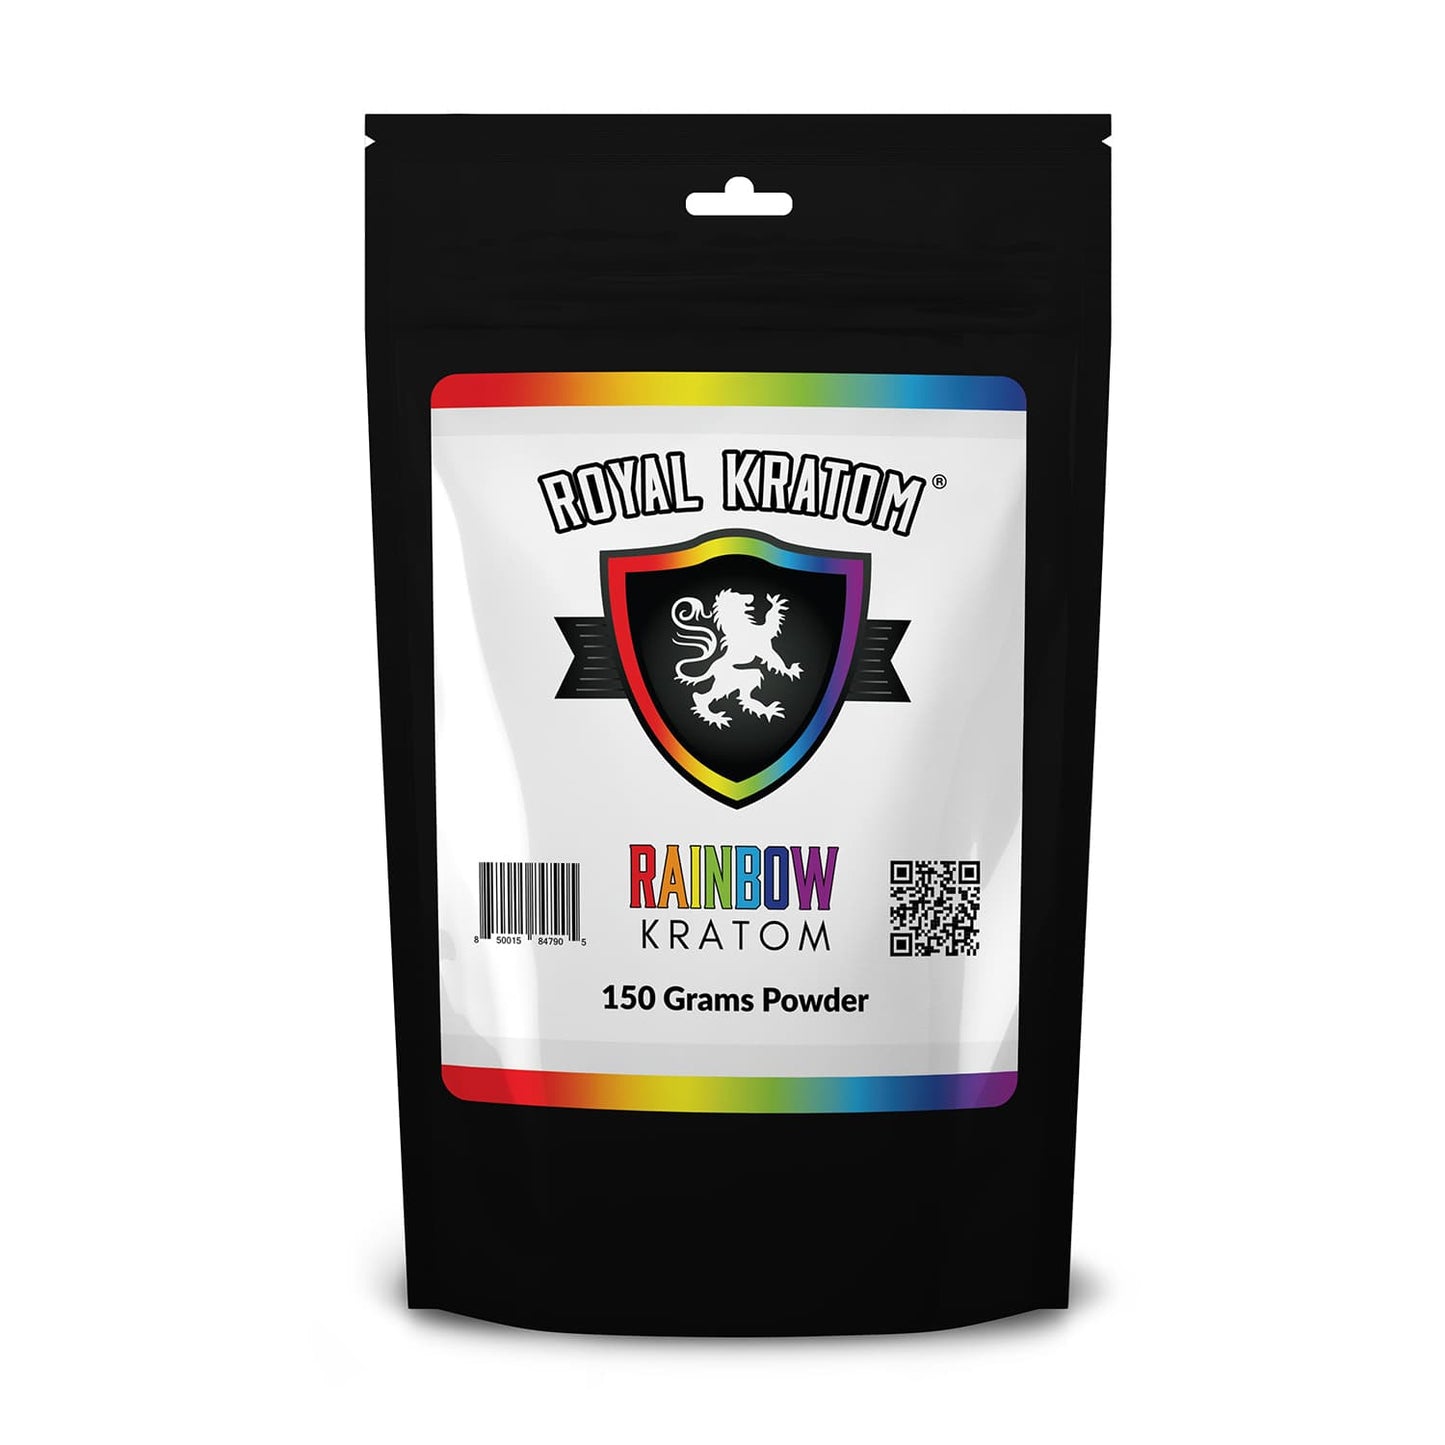 Royal Kratom Rainbow Kratom Blend Powder 150 grams front of package